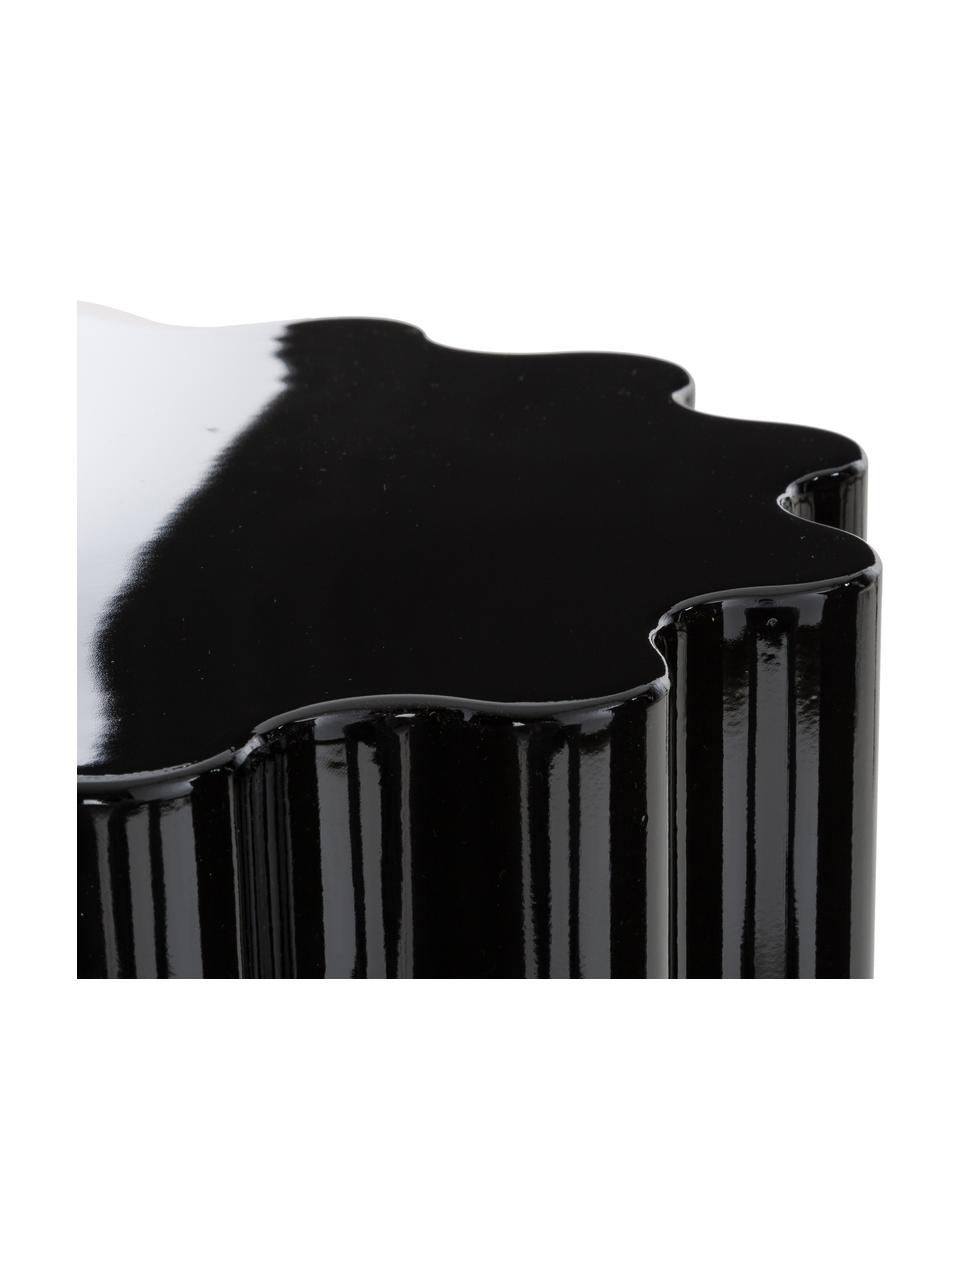 Stołek/stolik pomocniczy Colonna, Tworzywo sztuczne, pigmentowane, termoplastyczne, Czarny, błyszczący, Ø 35 x 46 cm